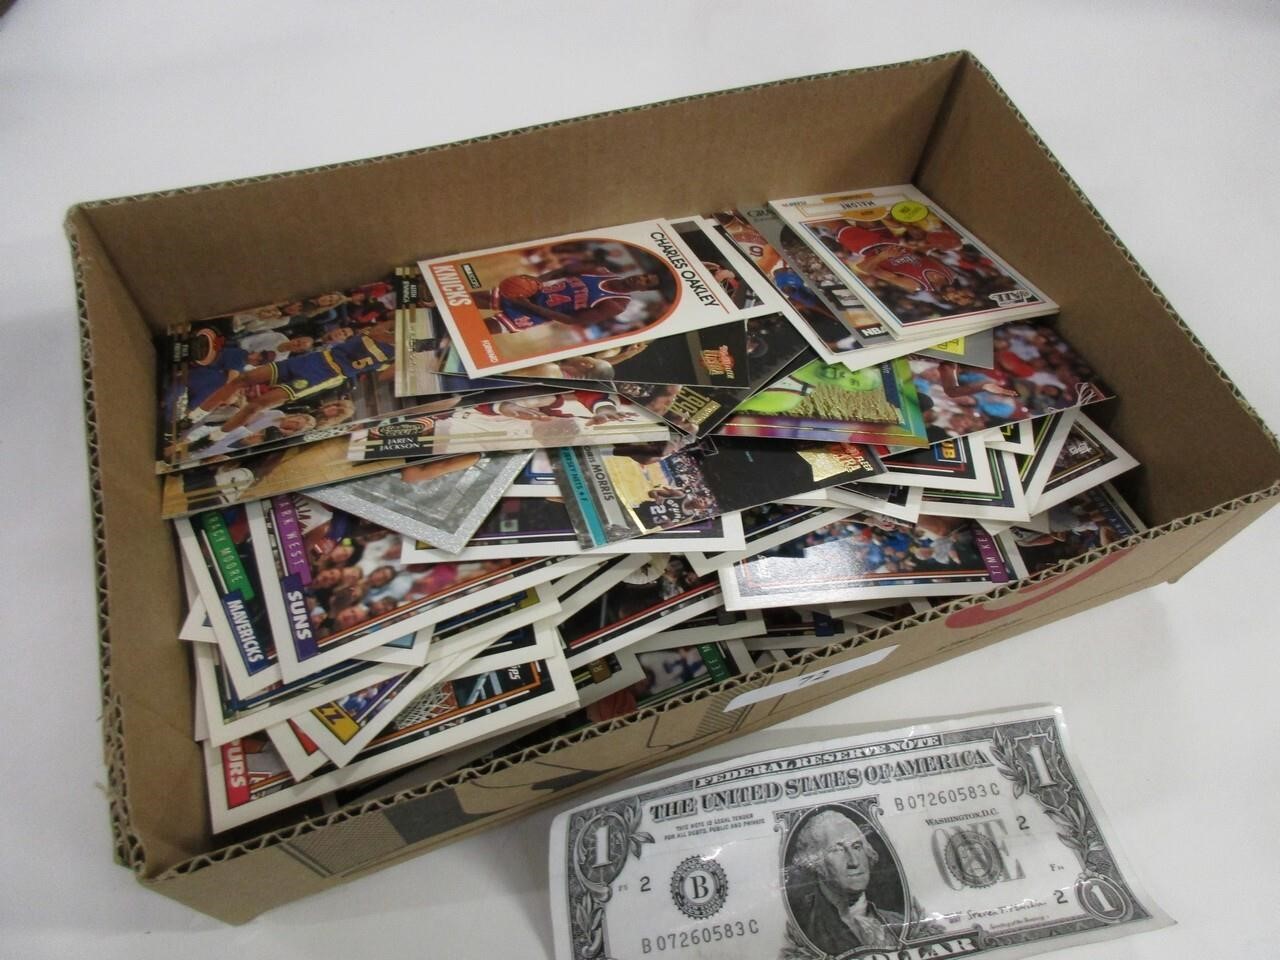 Hundreds of vintage basketball cards